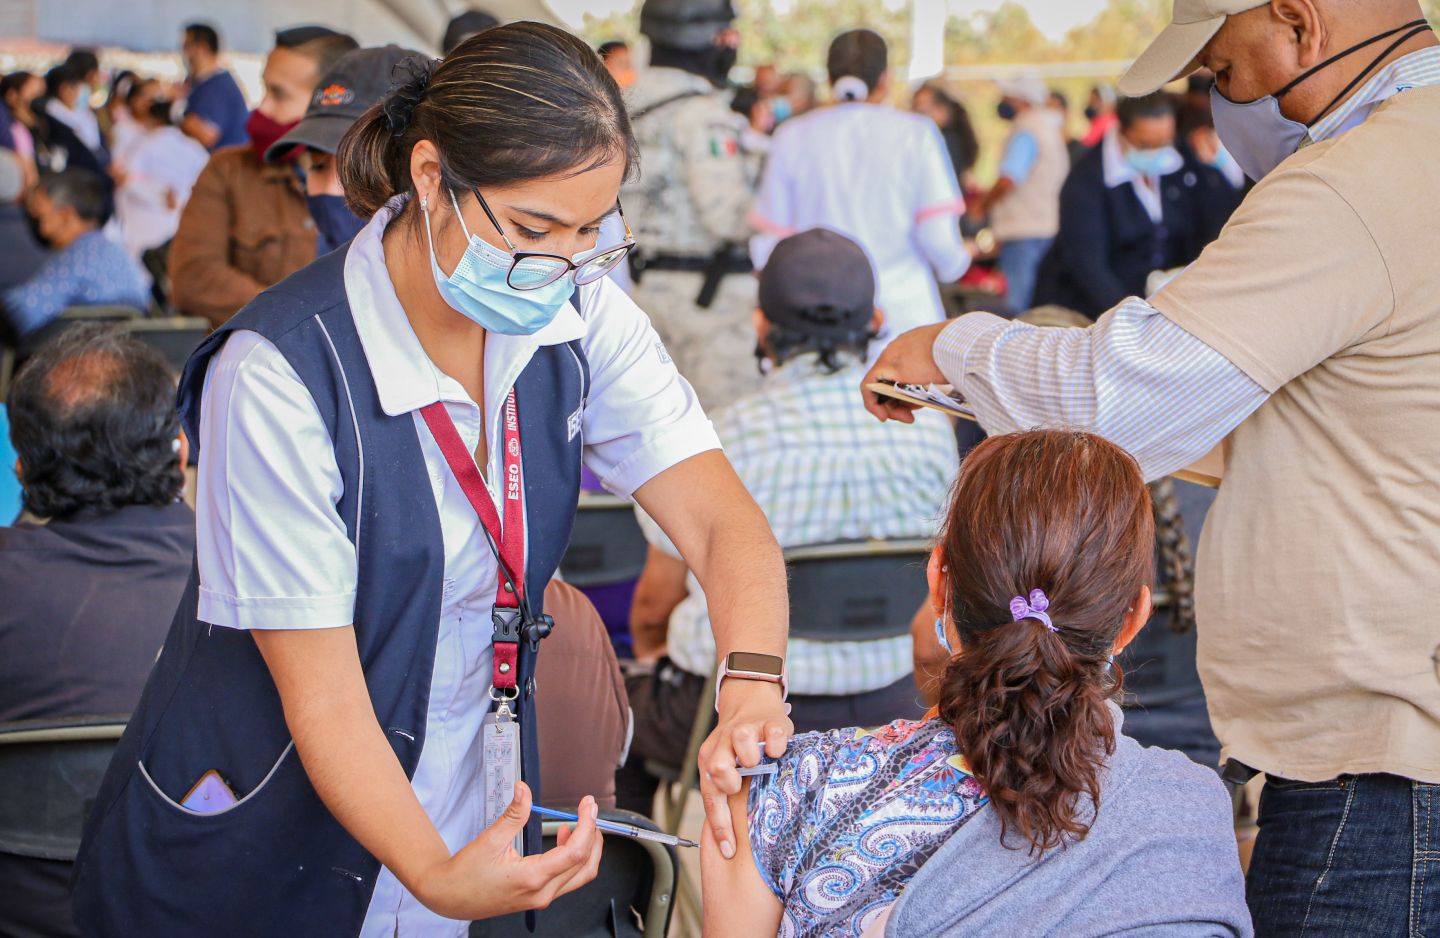 
En marcha aplicación de refuerzo de vacuna contra COVID-19 para adultos mayores de Chimalhuacán
